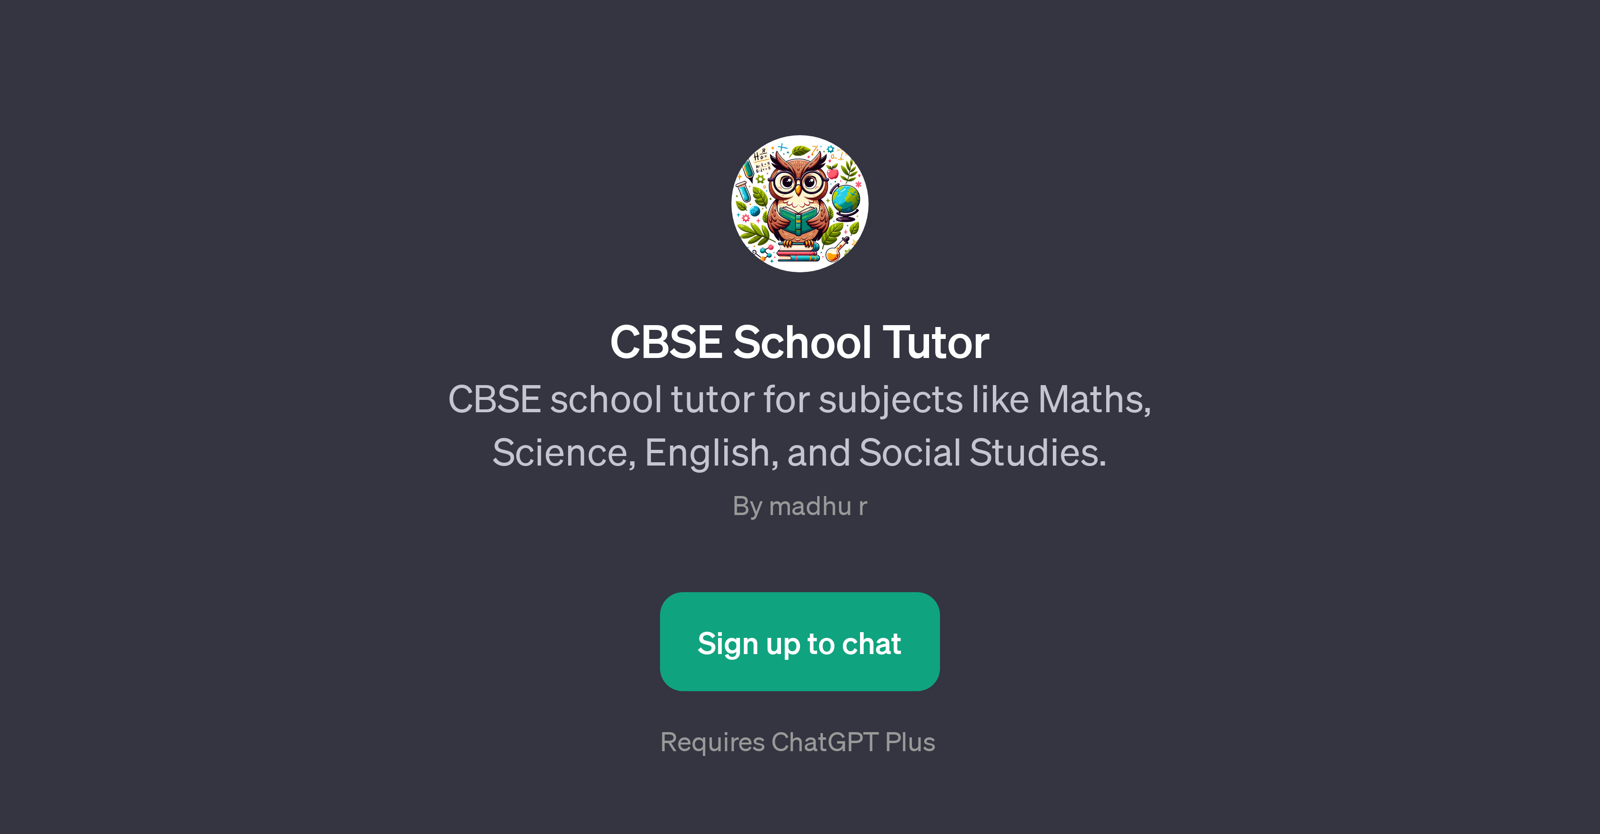 CBSE School Tutor website